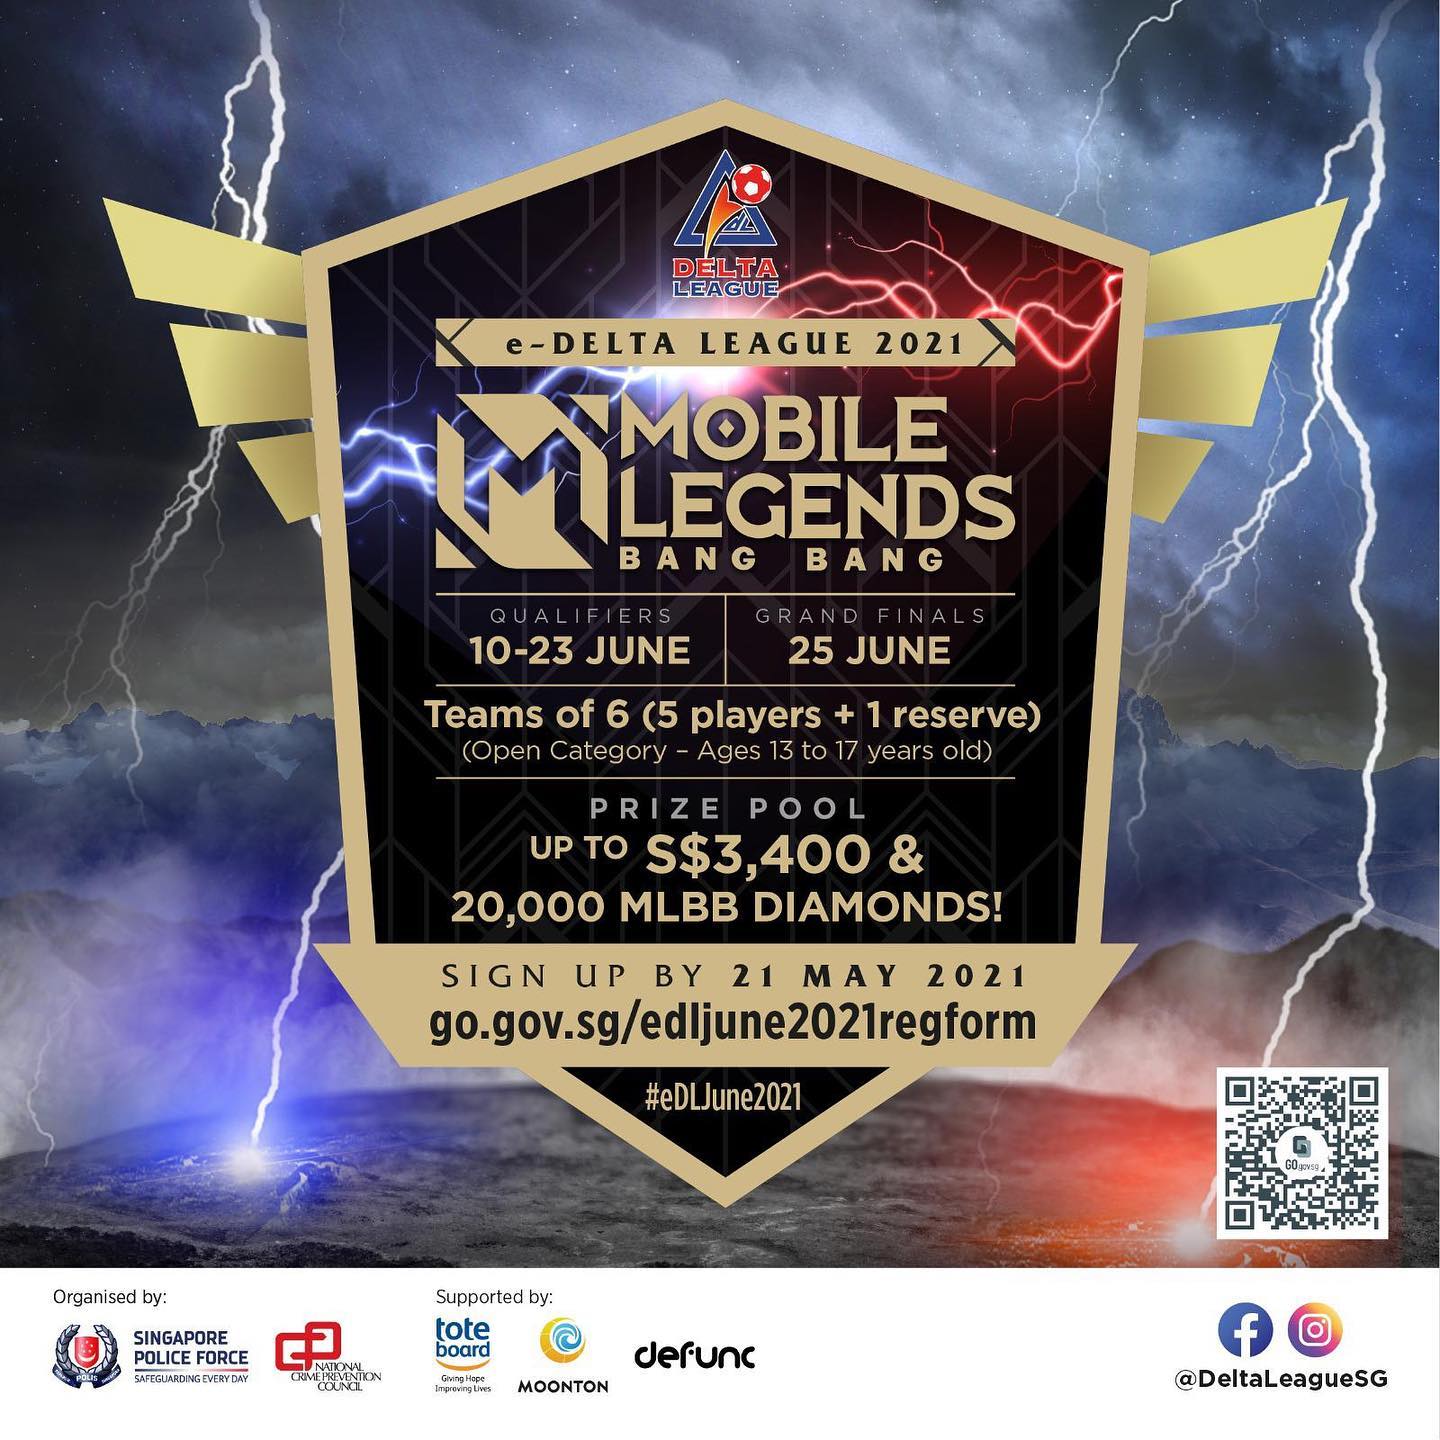 5v5 Mobile Legends tournament